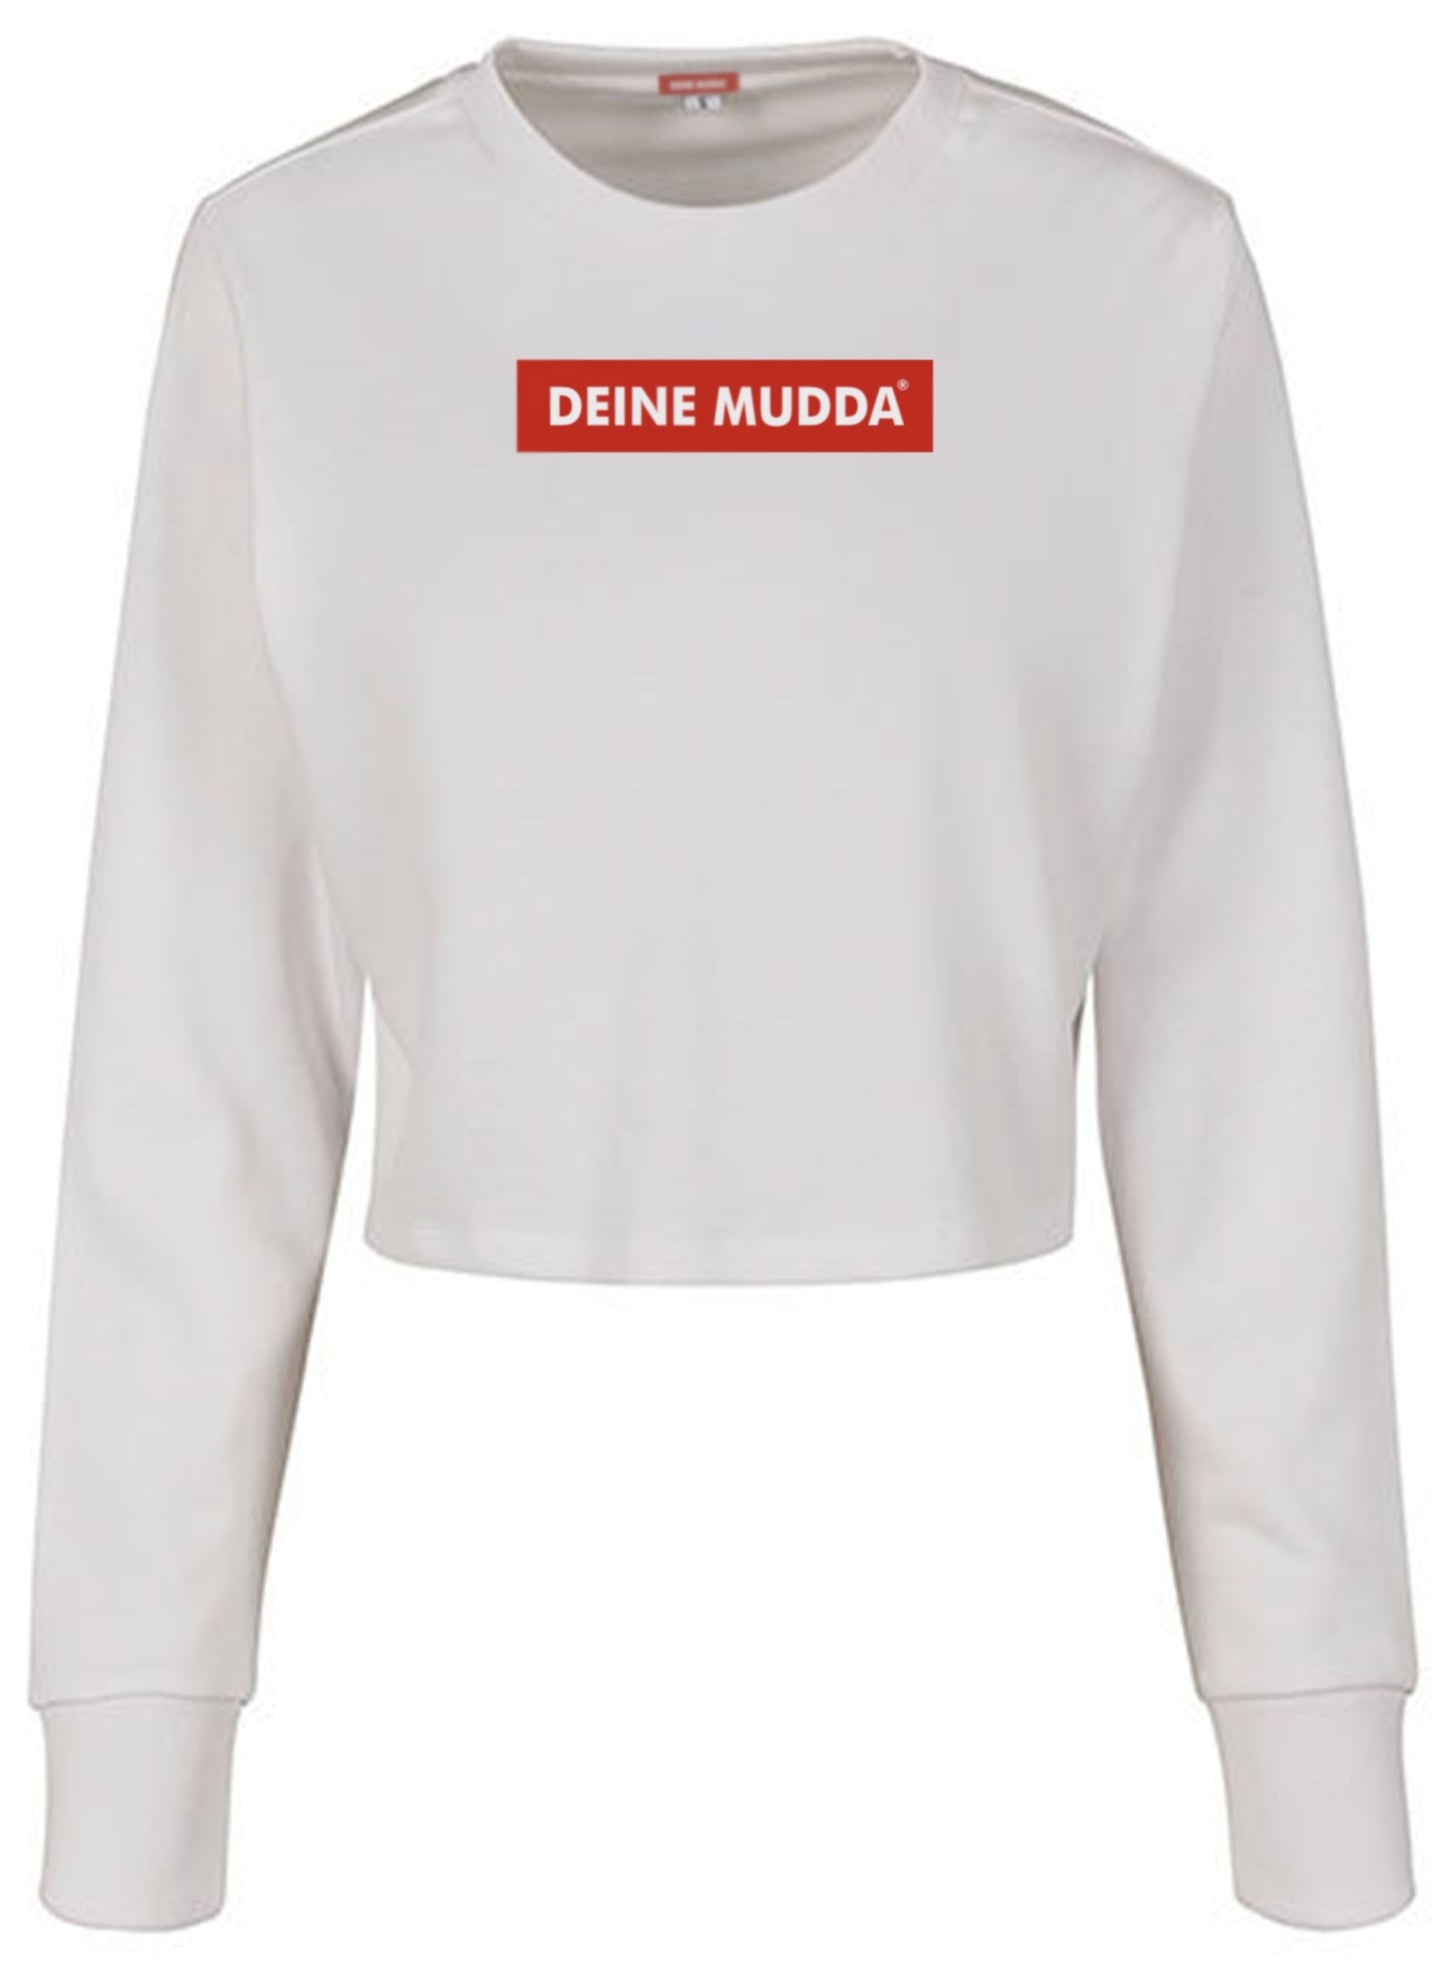 Cropped Pullover für Damen OC Logo rot (weiß) DEINE MUDDA®